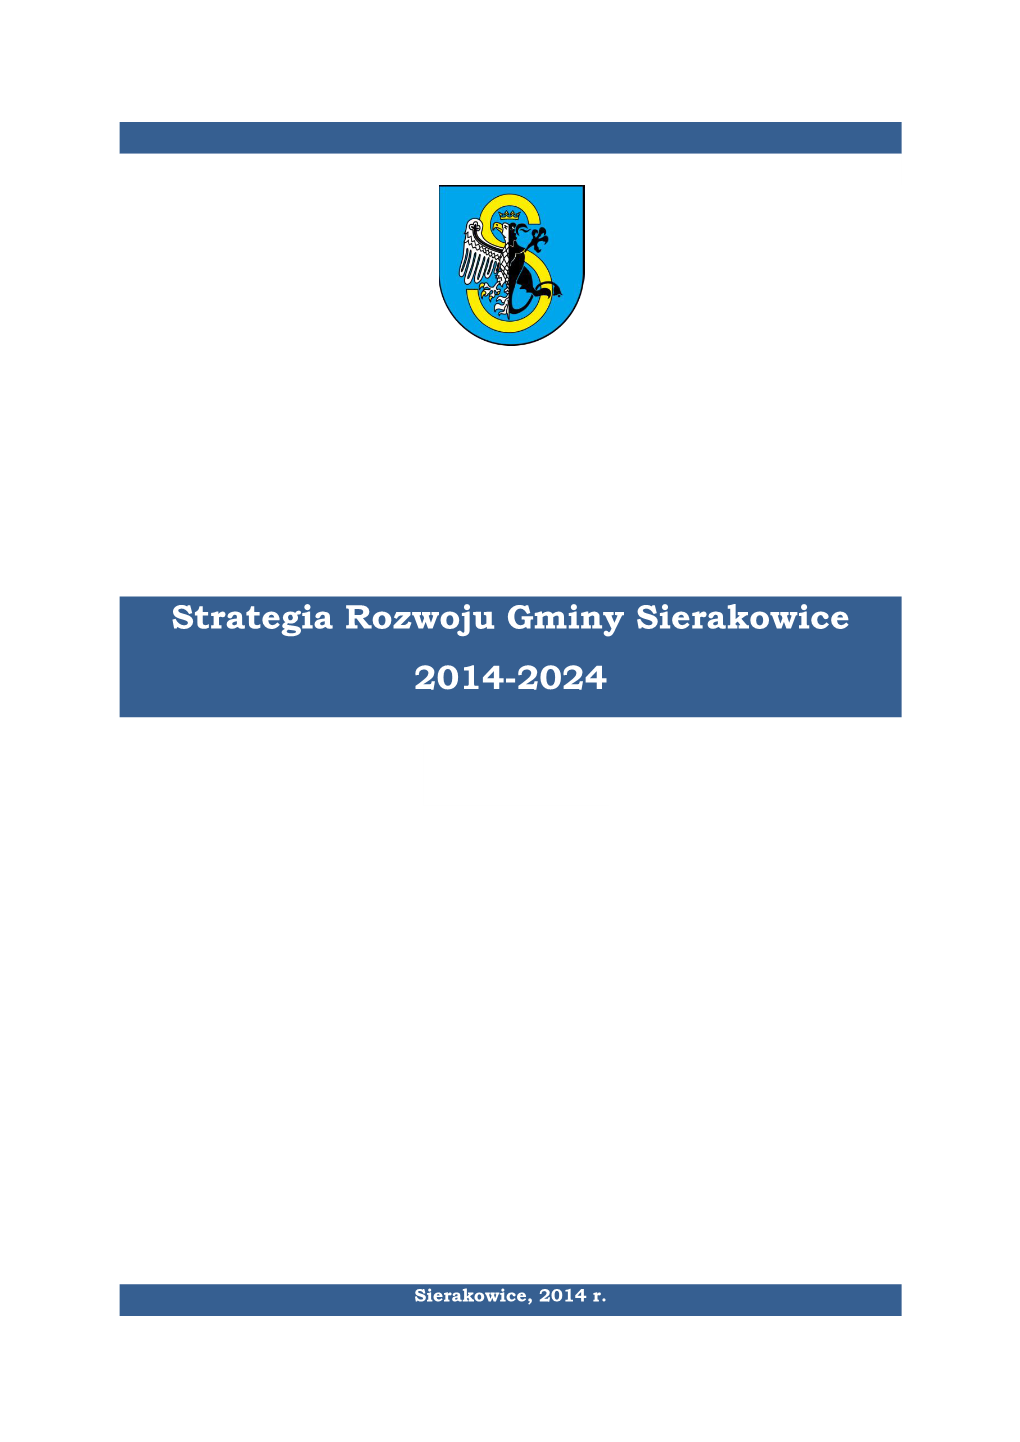 Strategia Rozwoju Gminy Sierakowice 2014-2024